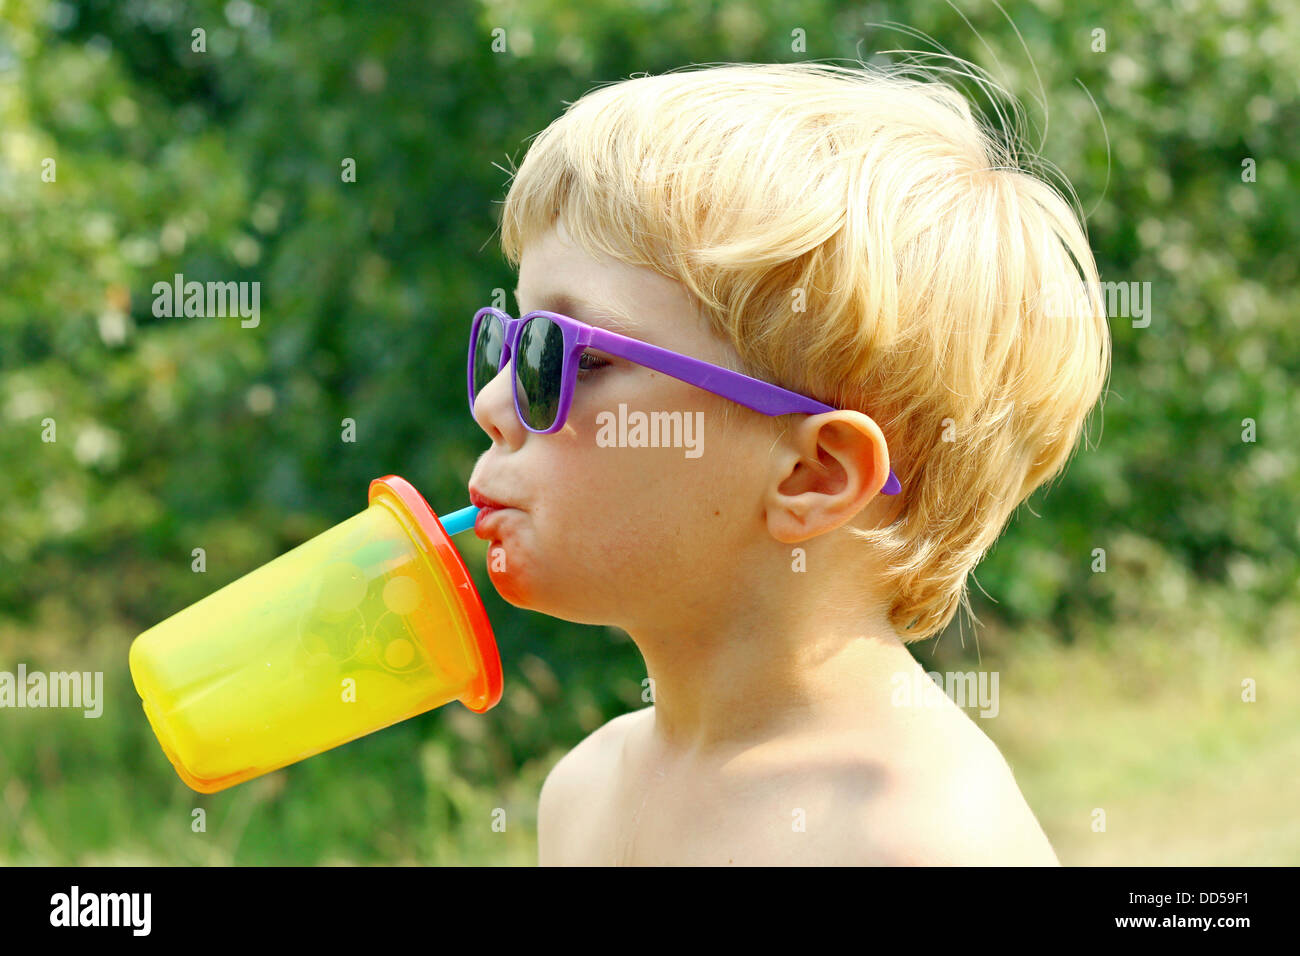 Un joven llevaba gafas de sol púrpura está inclinando su cabeza hacia atrás beber jugo de una colorida sippy cup en un día soleado de verano Foto de stock